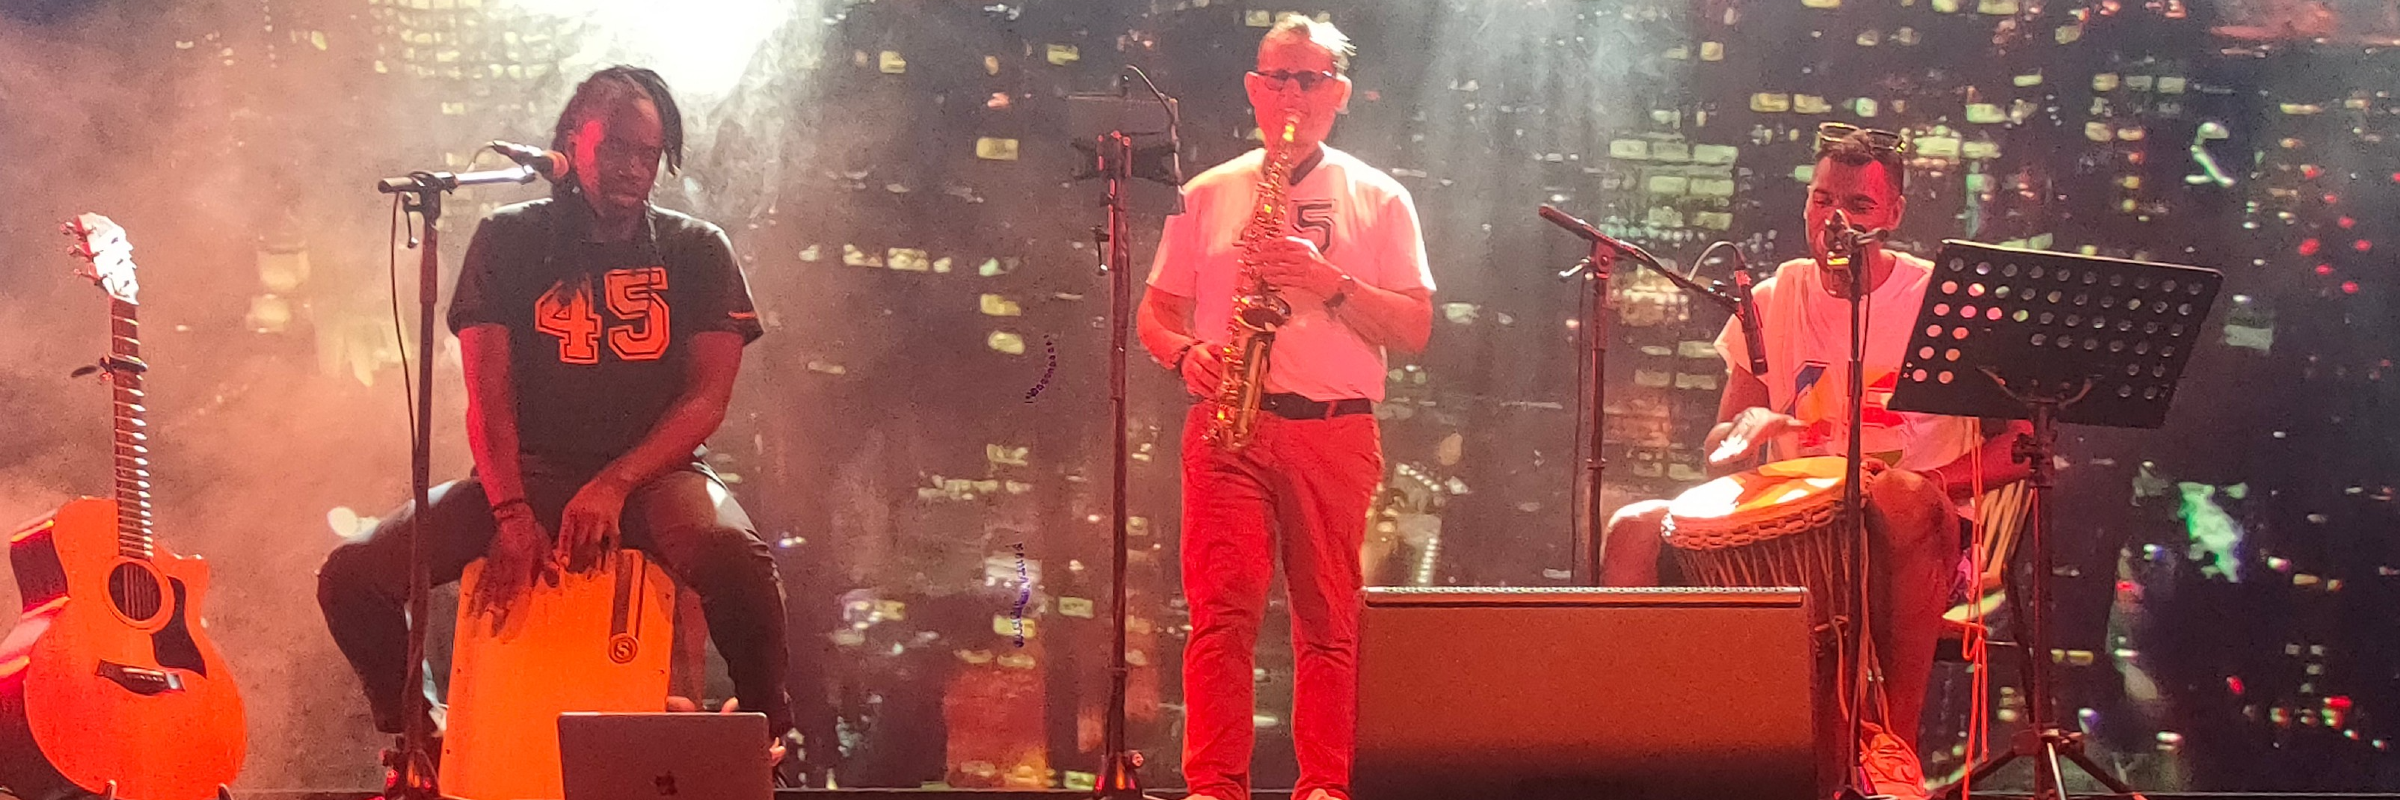 Brun'oSax, musicien Saxophoniste en représentation à Nord - photo de couverture n° 2